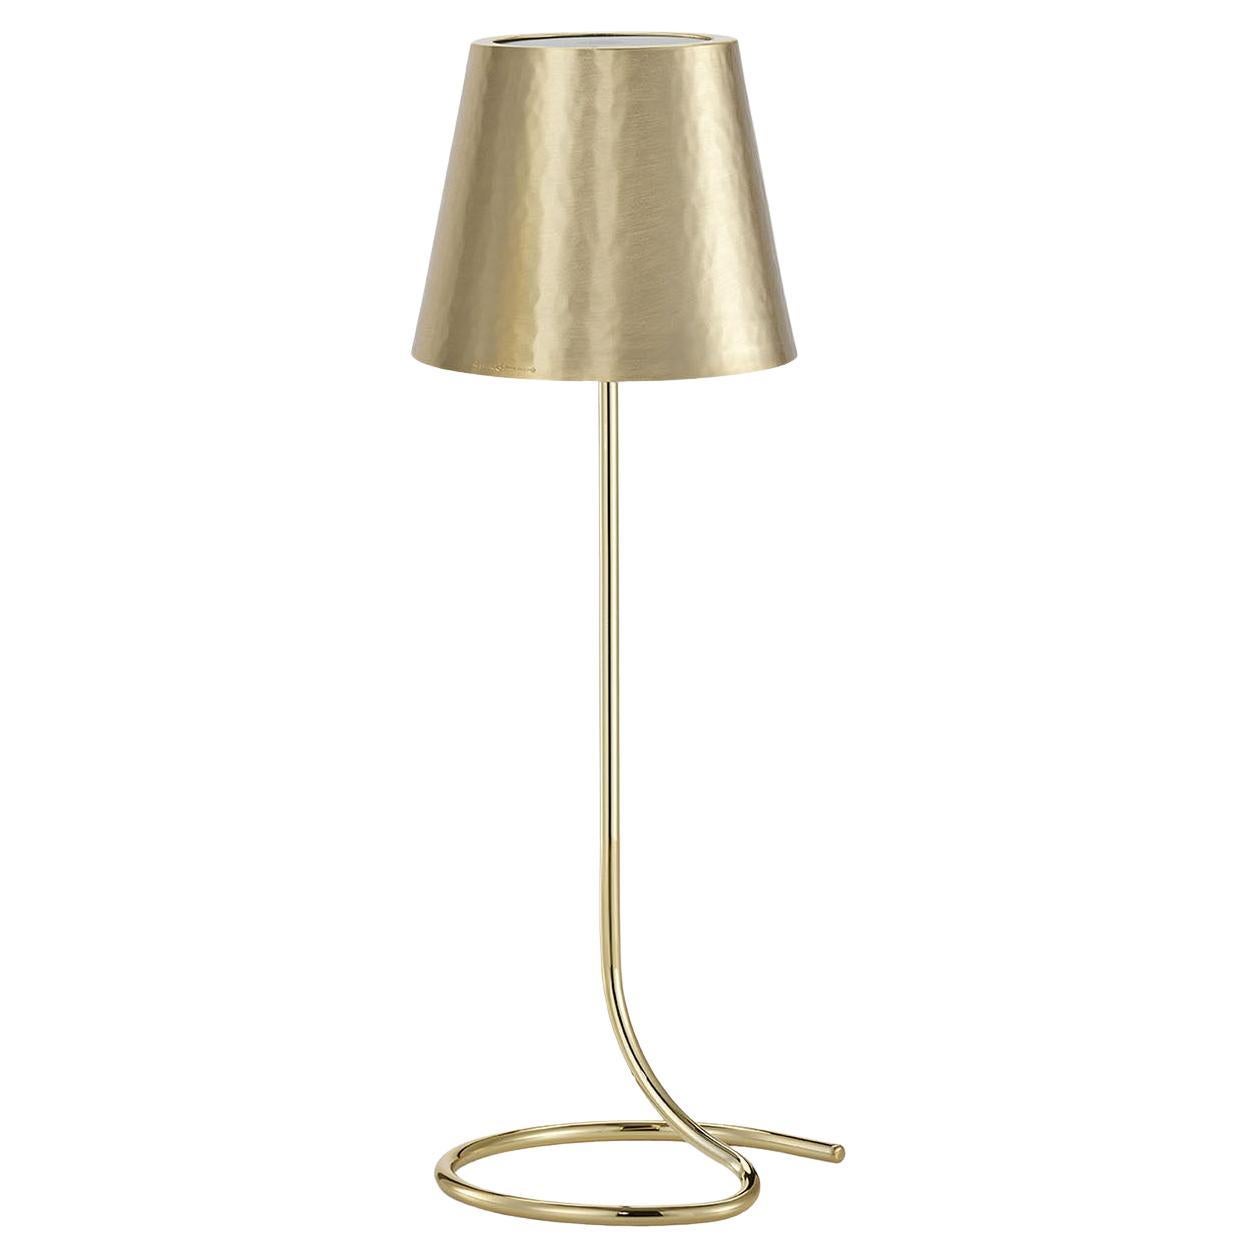 Golden Lamp #2 by Itamar Harari